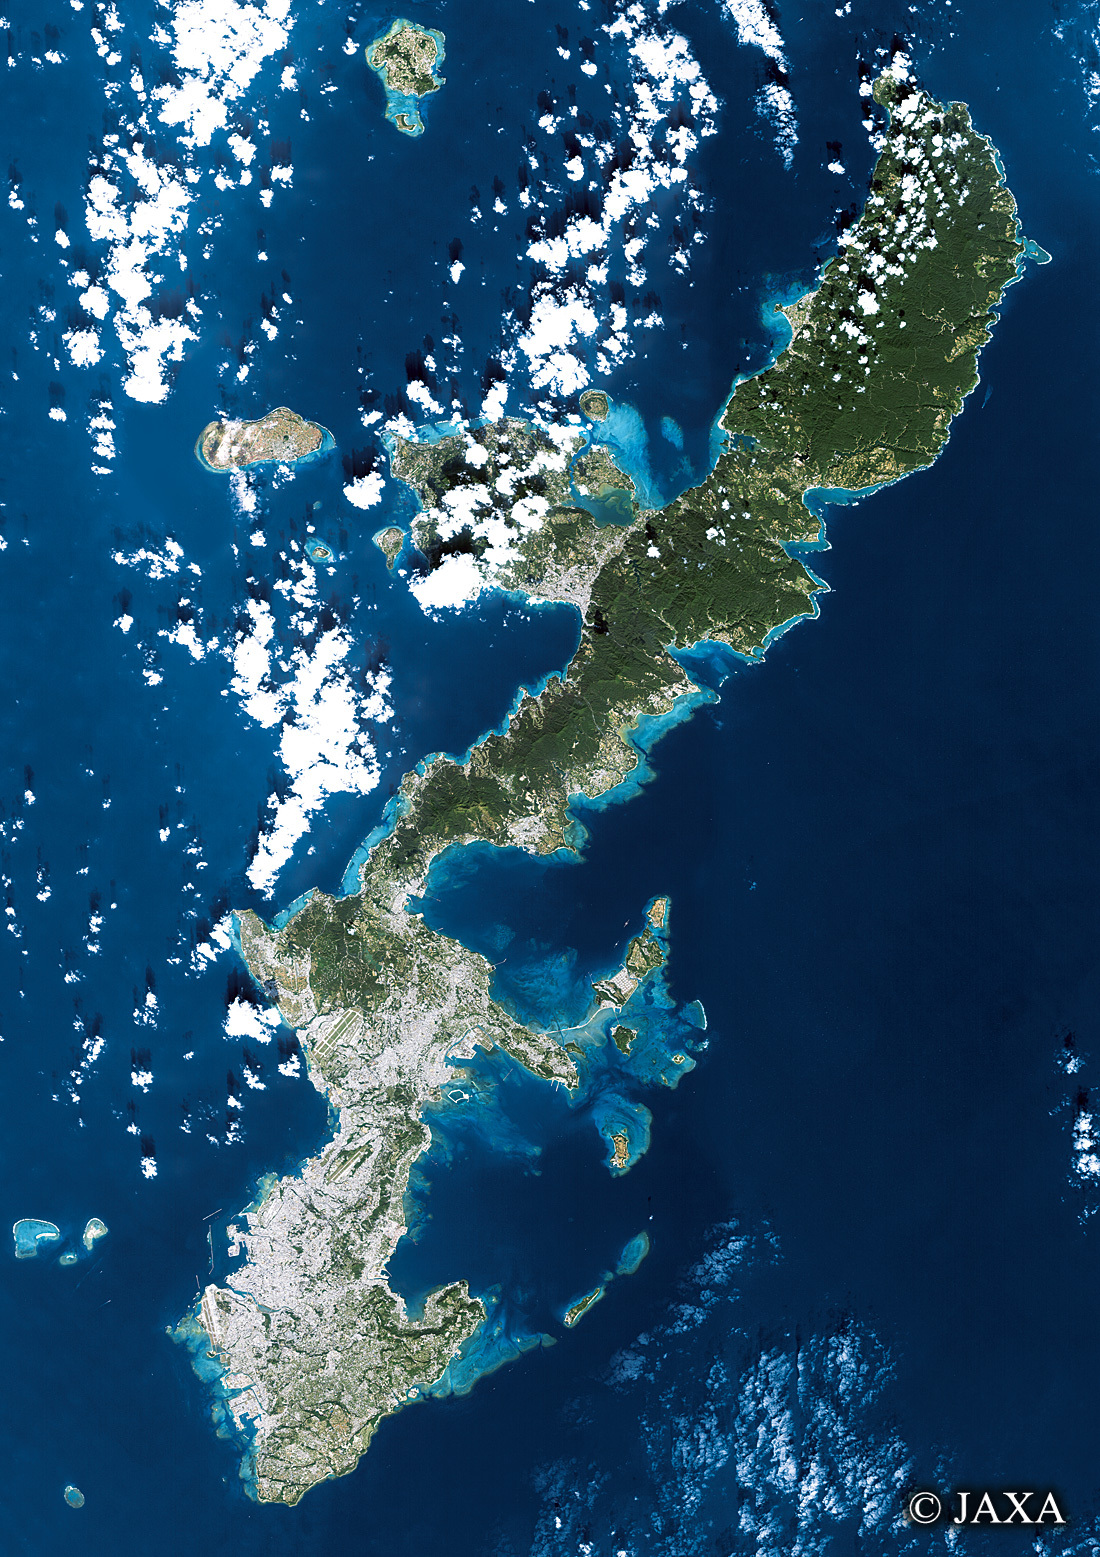 だいちから見た日本の都市 沖縄本島と島々:衛星画像